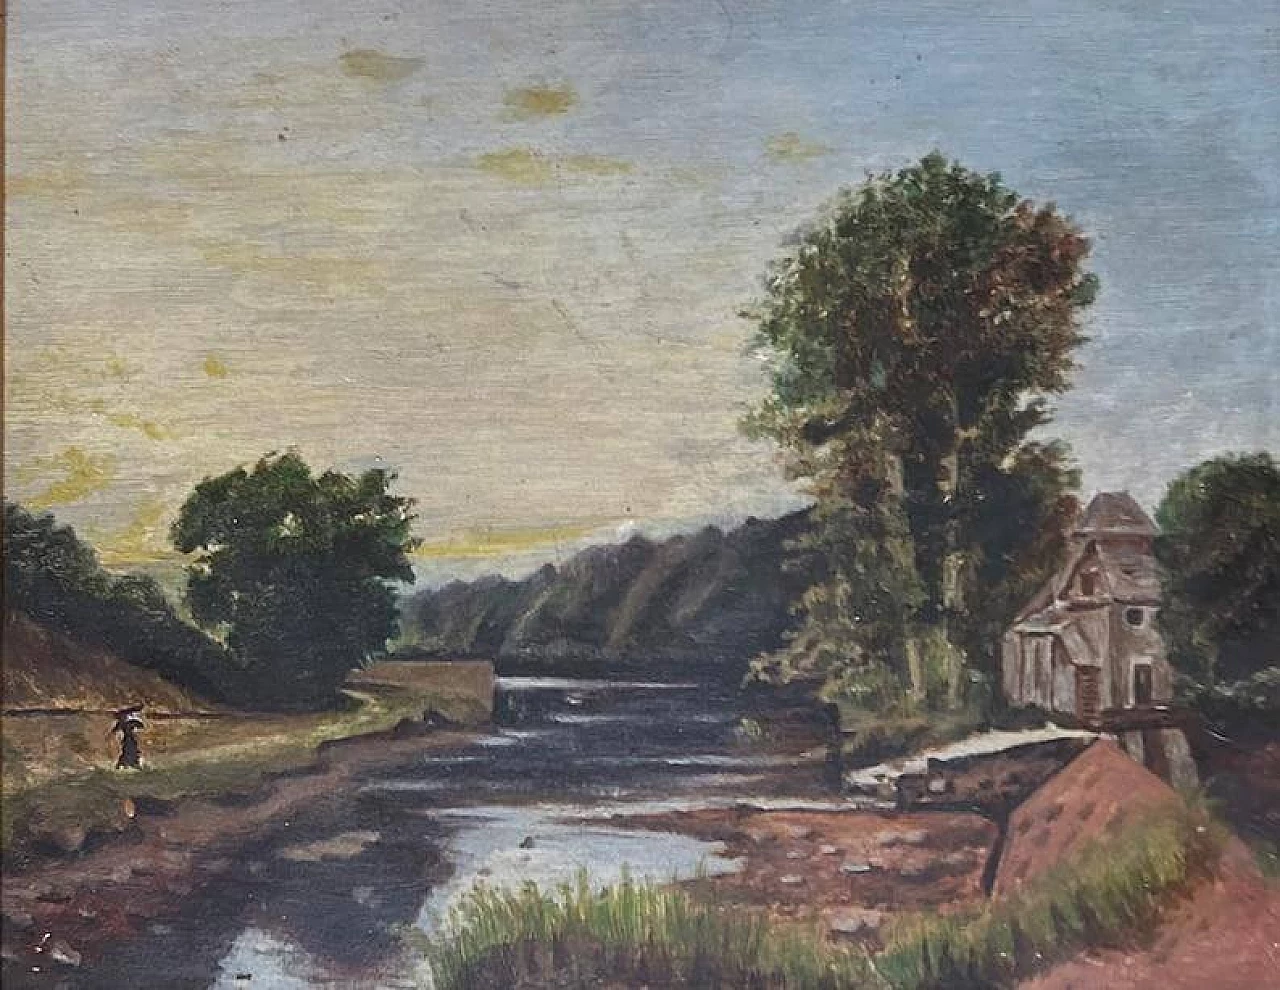 Paesaggio lacustre nello stile della Scuola di Barbizon, dipinto, anni '20 1